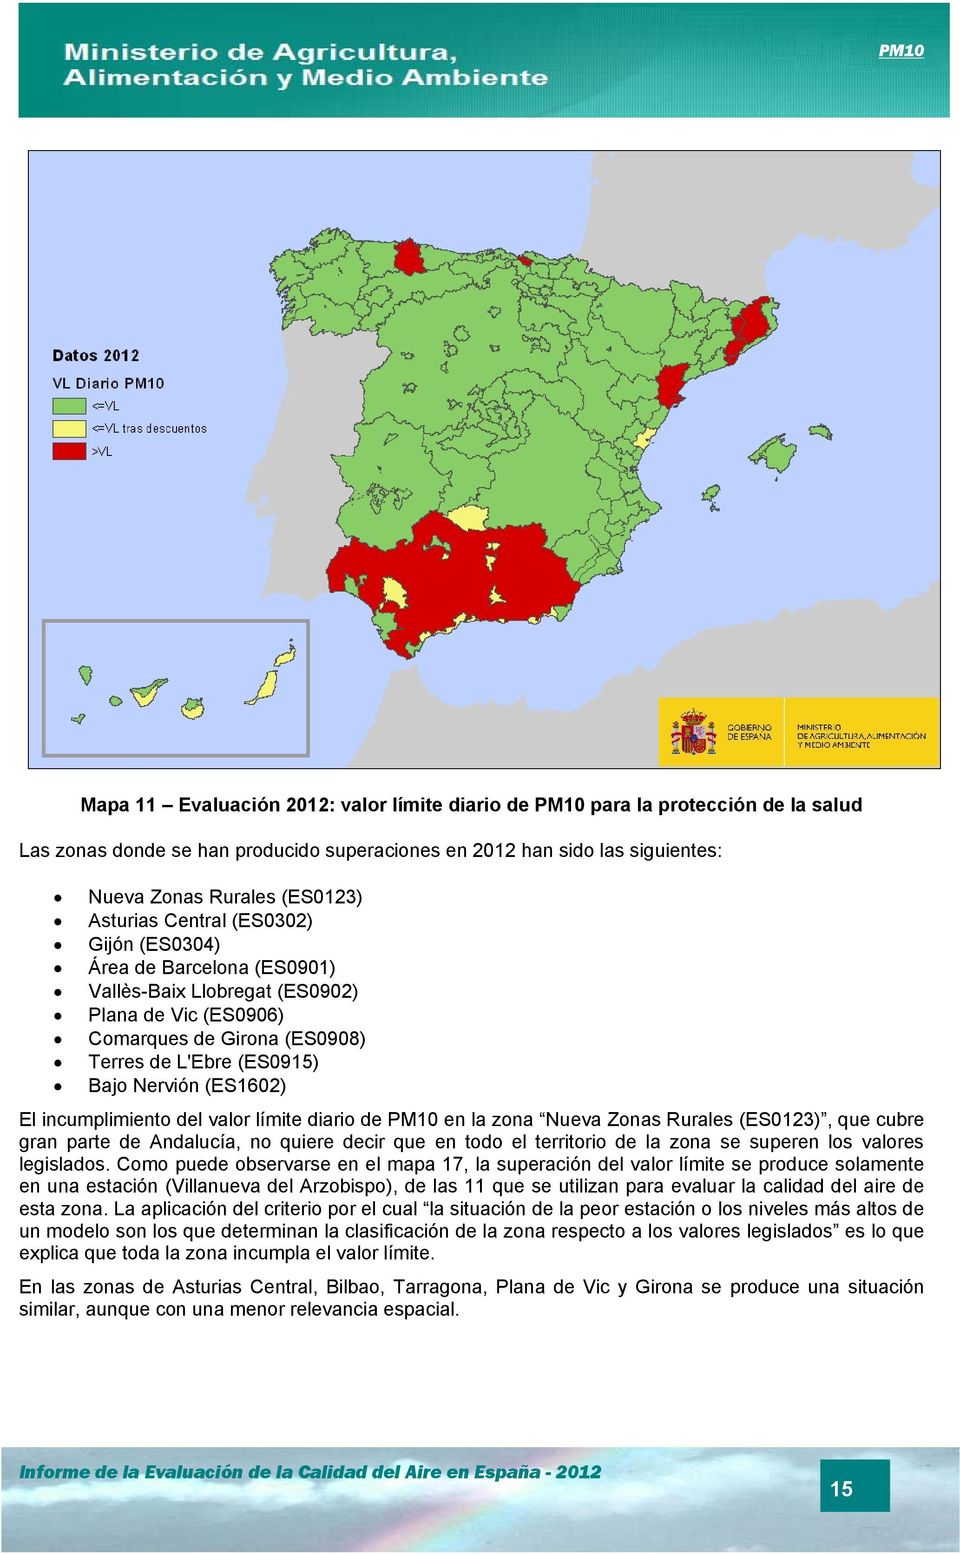 El incumplimiento del valor límite diario de PM10 en la zona Nueva Zonas Rurales (ES0123), que cubre gran parte de Andalucía, no quiere decir que en todo el territorio de la zona se superen los